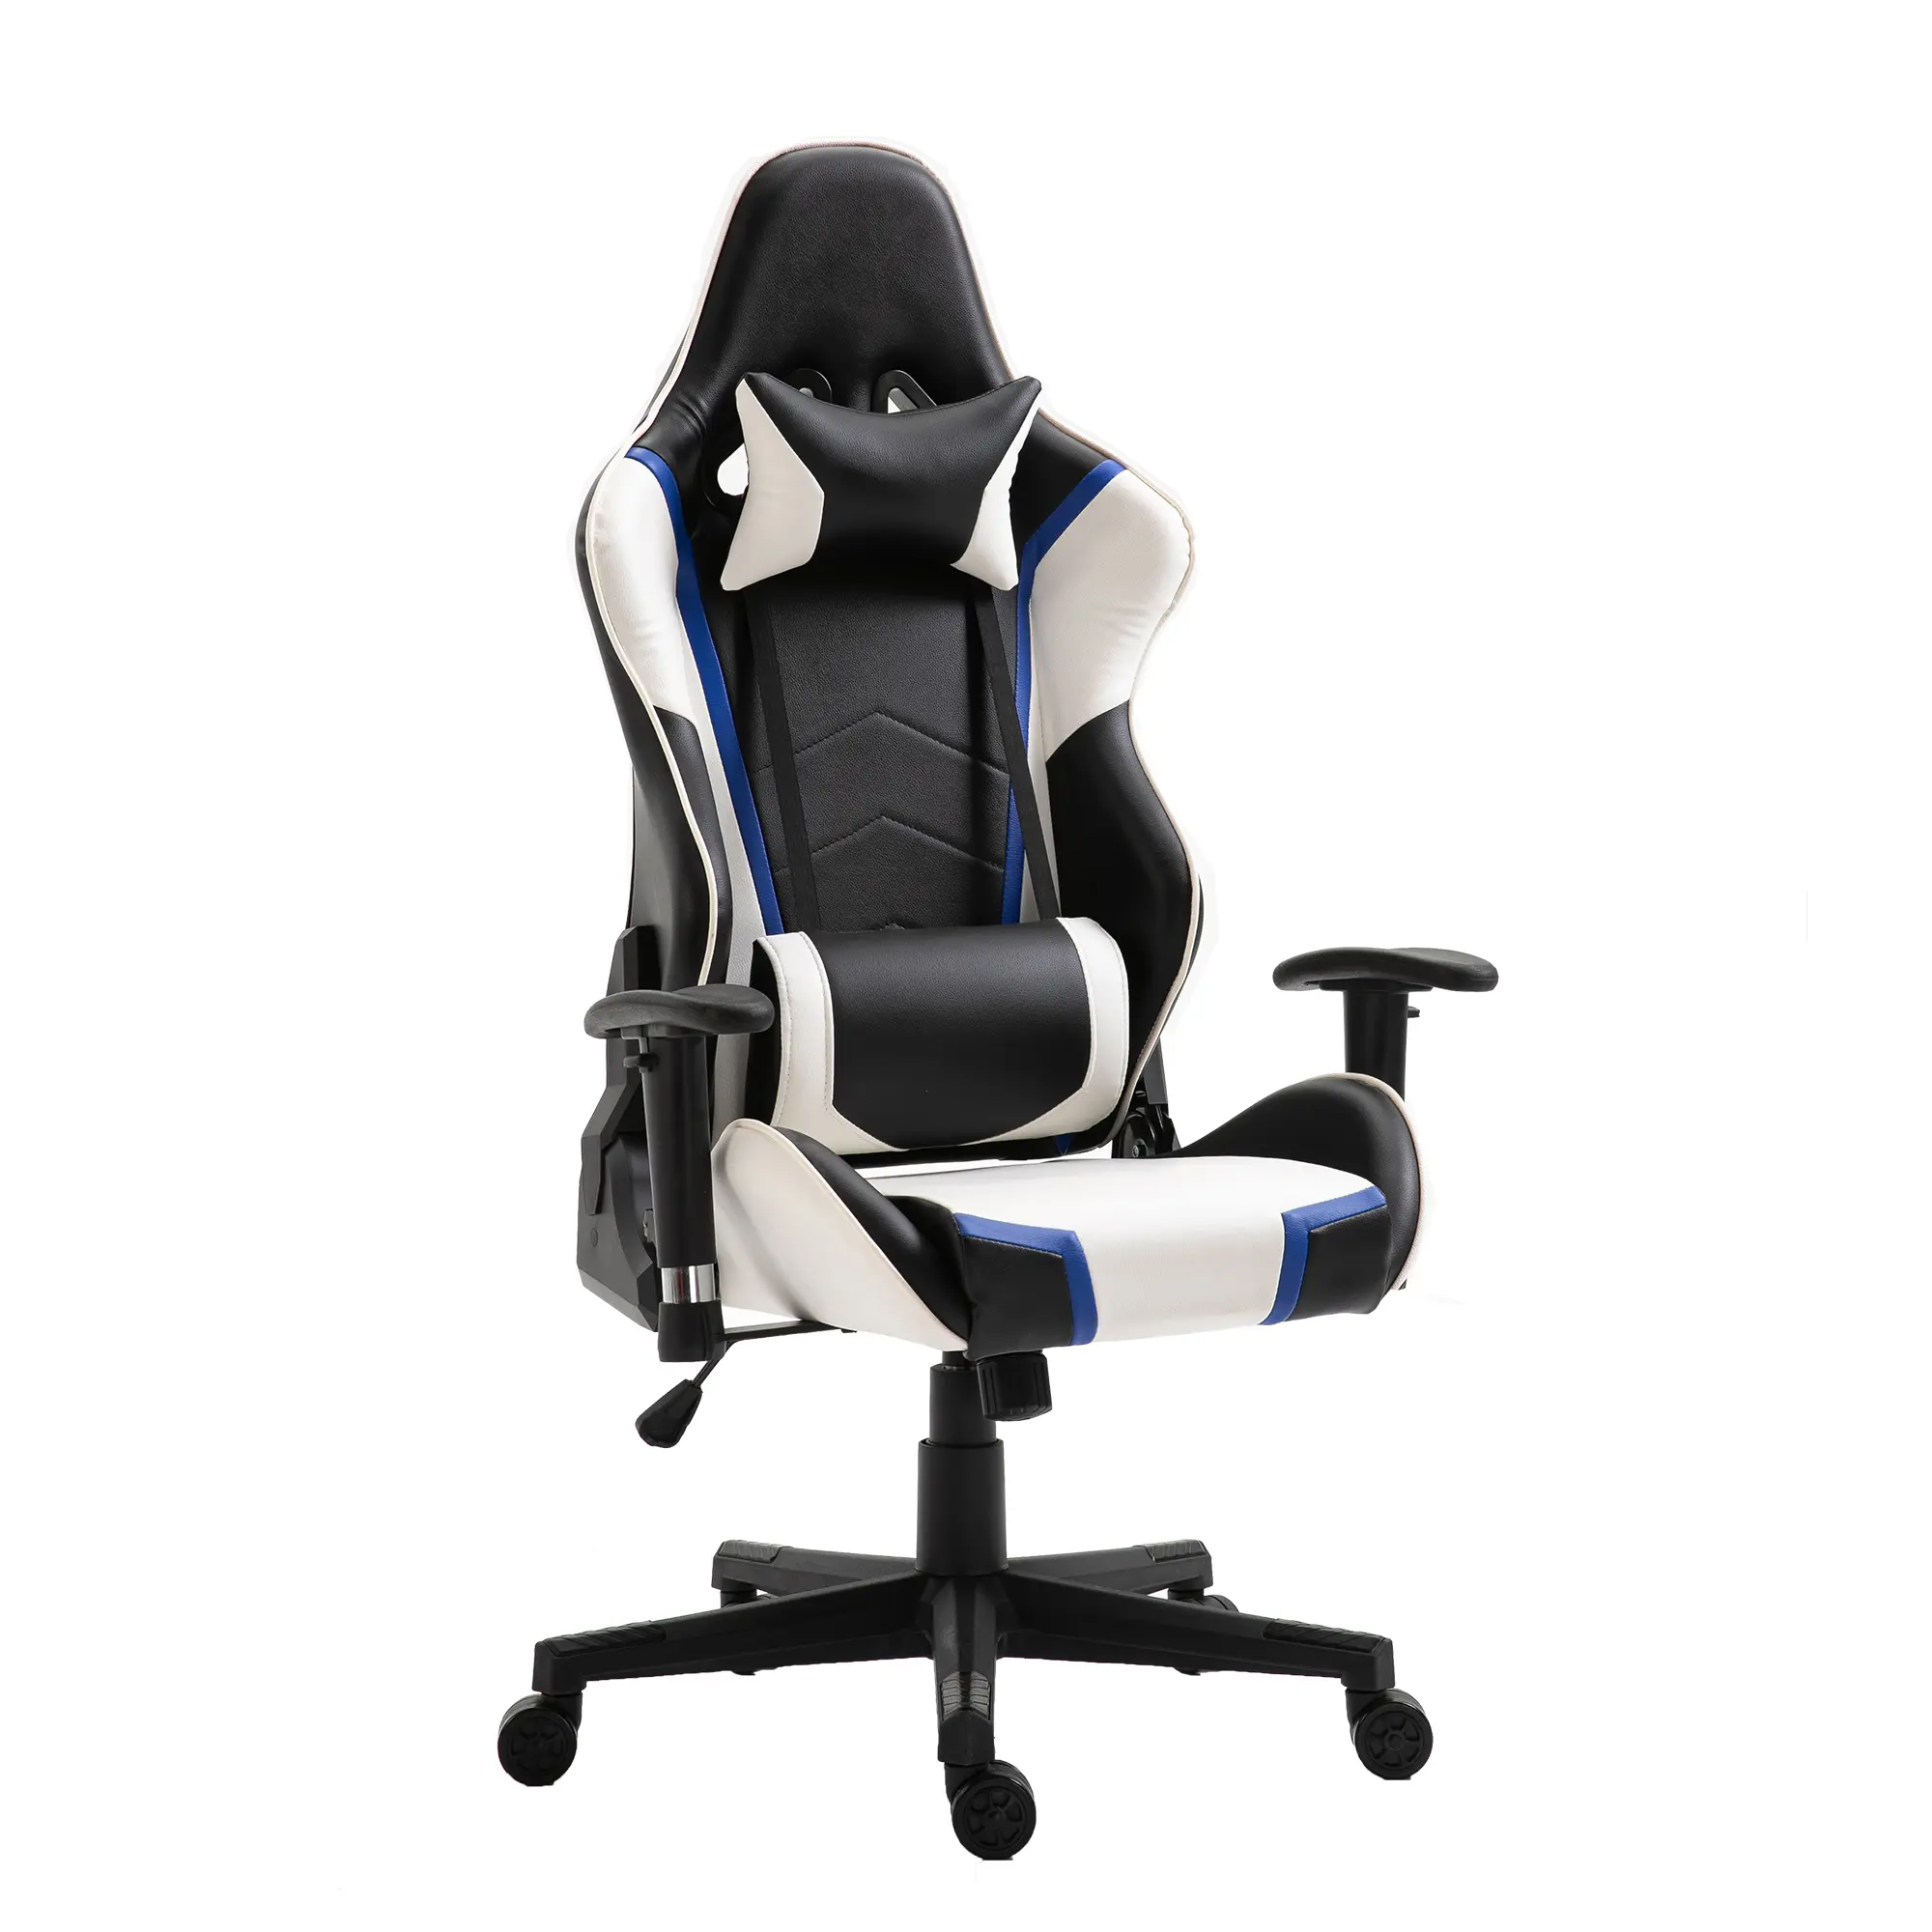 Ինչու՞ պետք է Էրգոնոմիկ աթոռներ գնել ձեր գրասենյակի համար